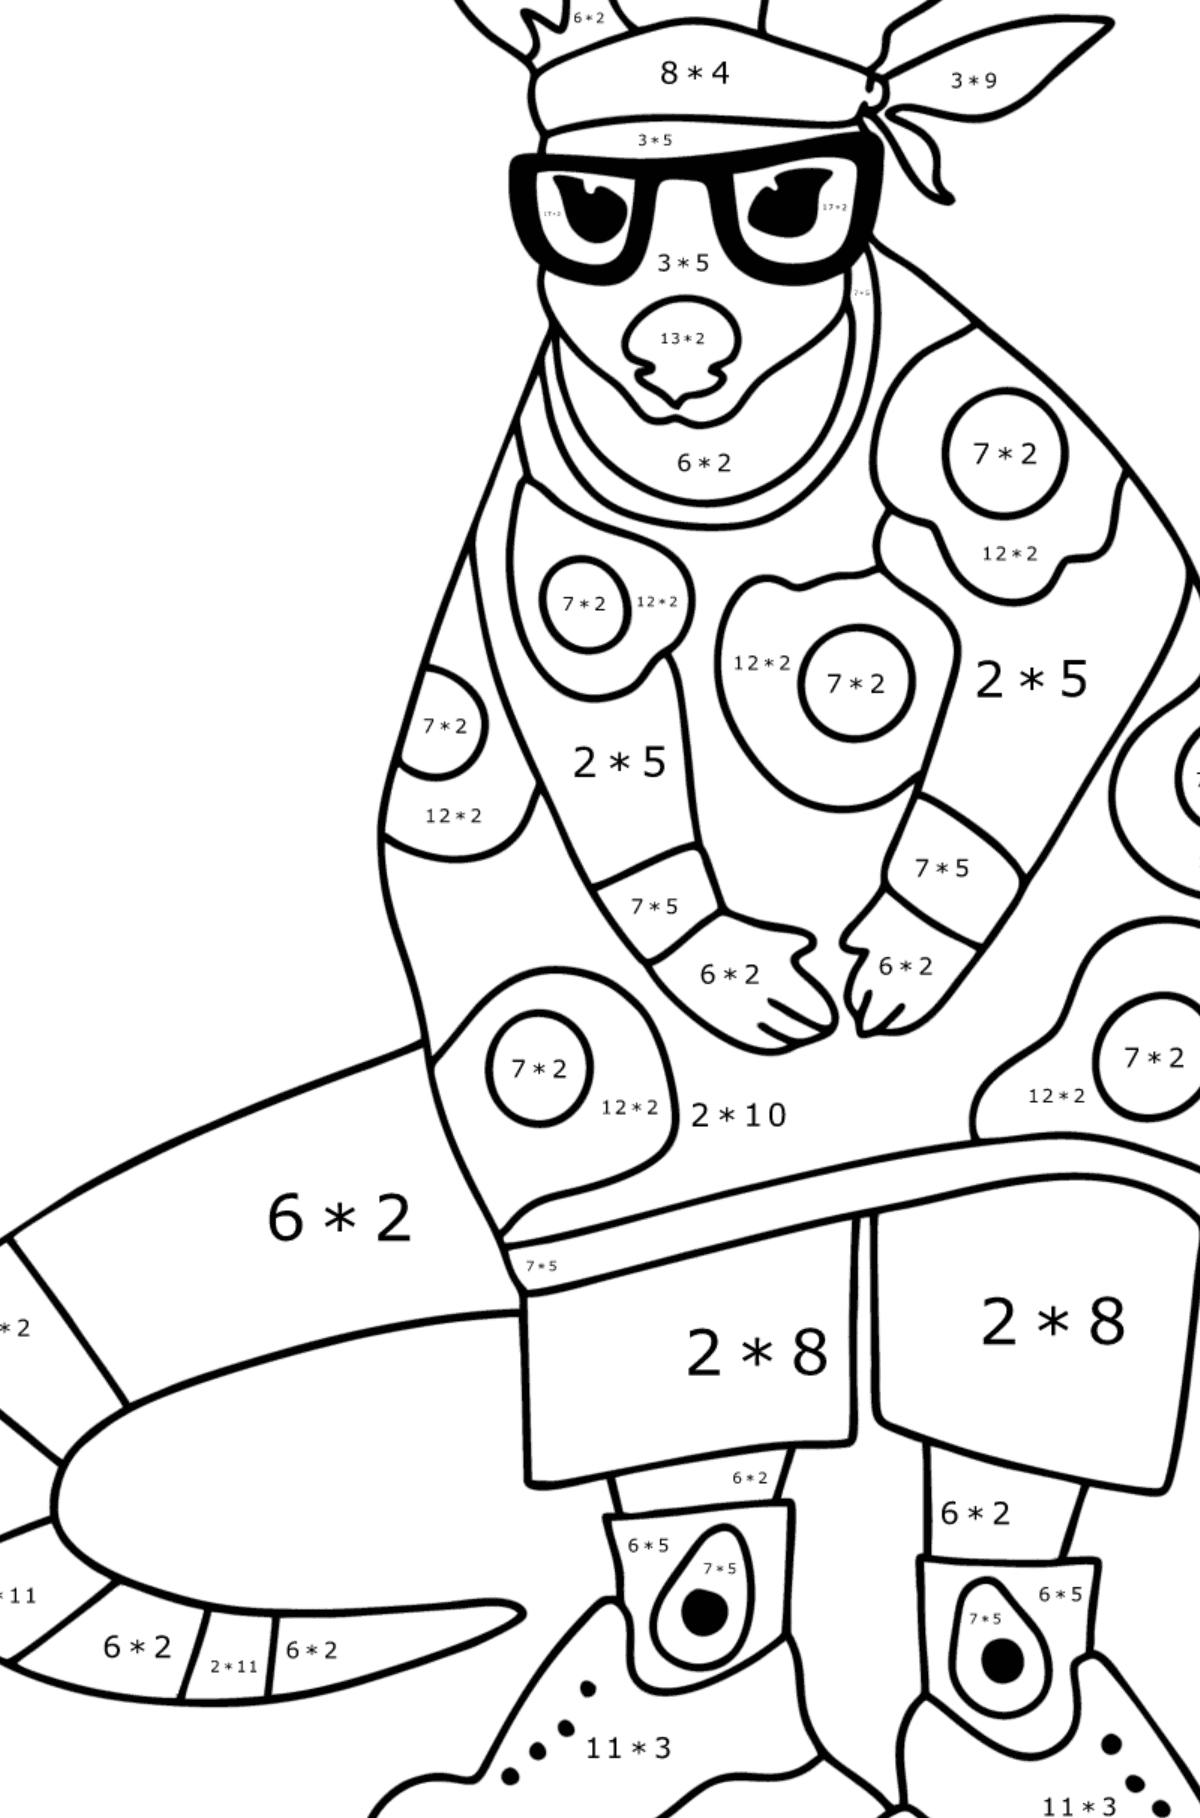 Omalovánka Kreslený milující klokan - Matematická Omalovánka - Násobení pro děti